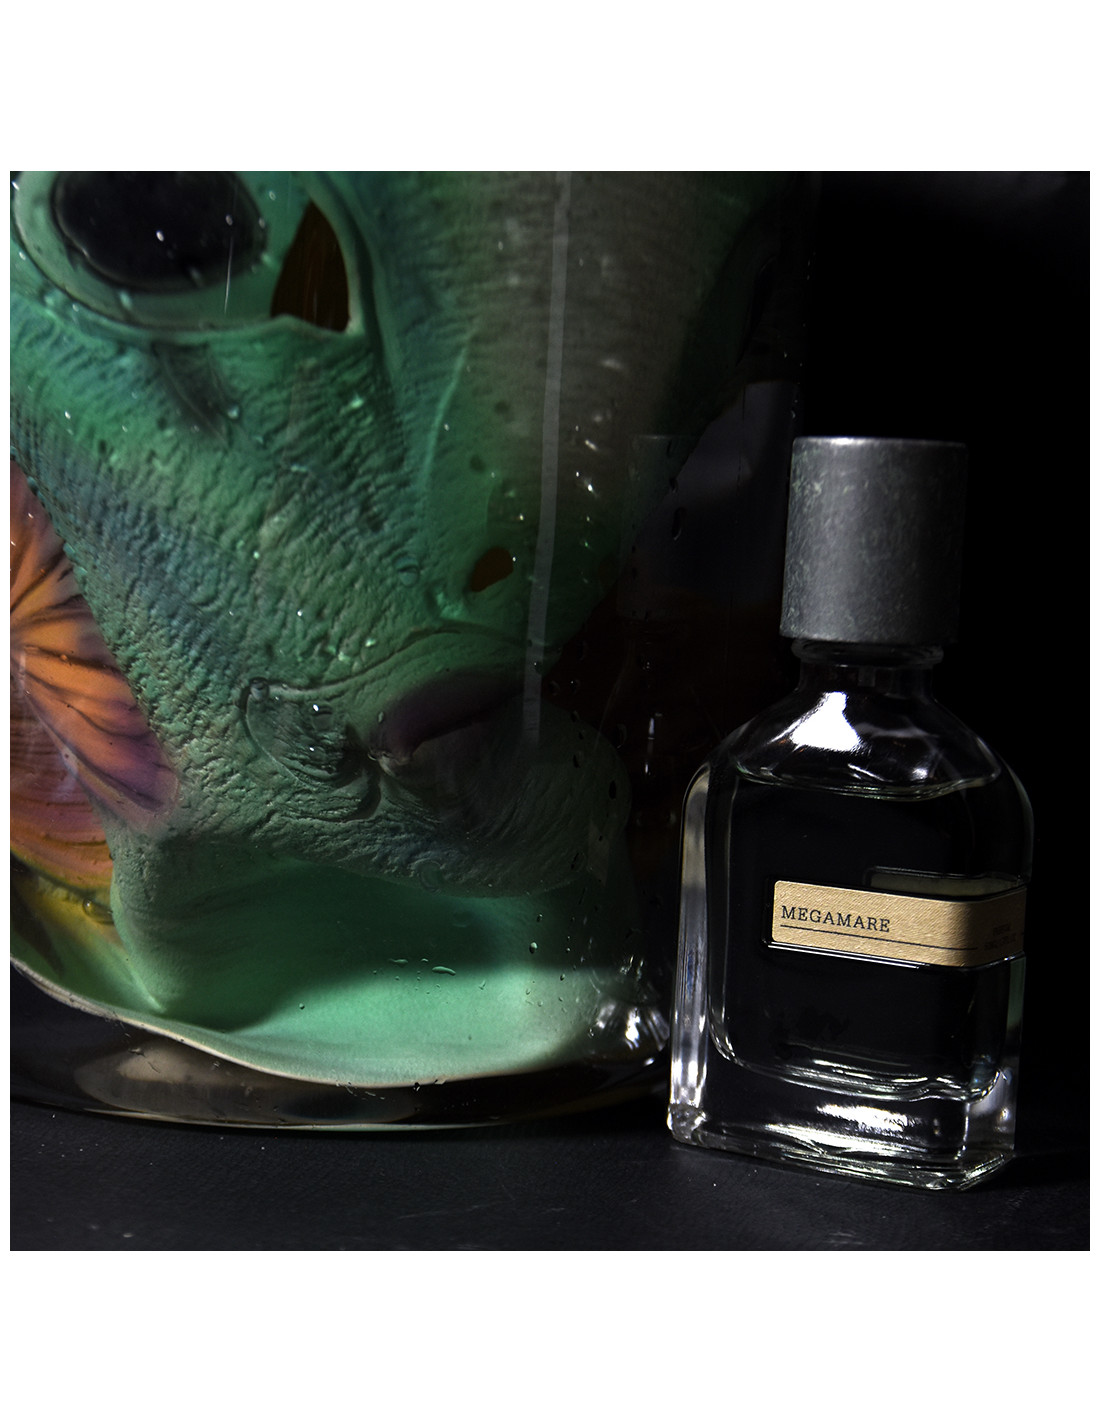 https://cdn1.essenzaltro.it/5527-thickbox_default/orto-parisi-megamare-parfum.jpg